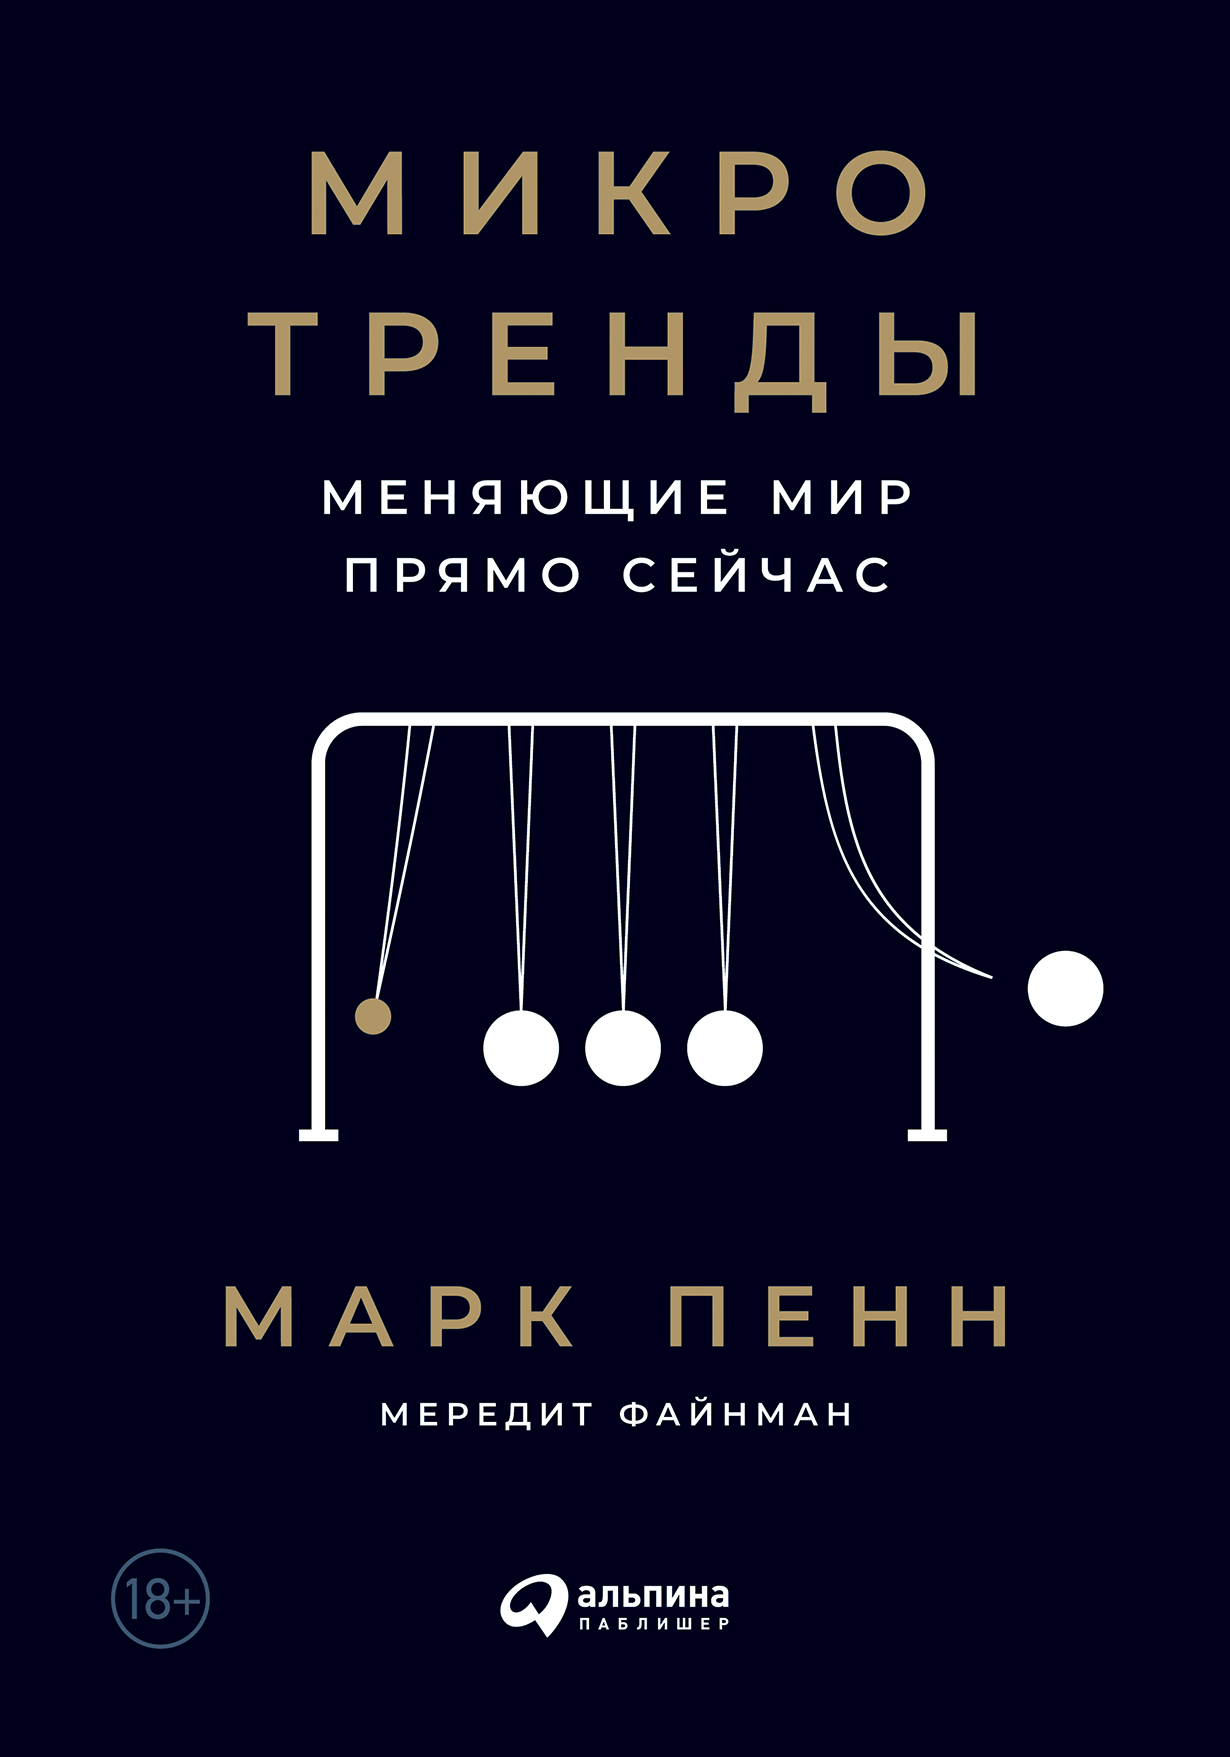 Микротренды, меняющие мир прямо сейчас / Марк Пенн, Мередит Файнман / Москва: Альпина Паблишер, 2022.